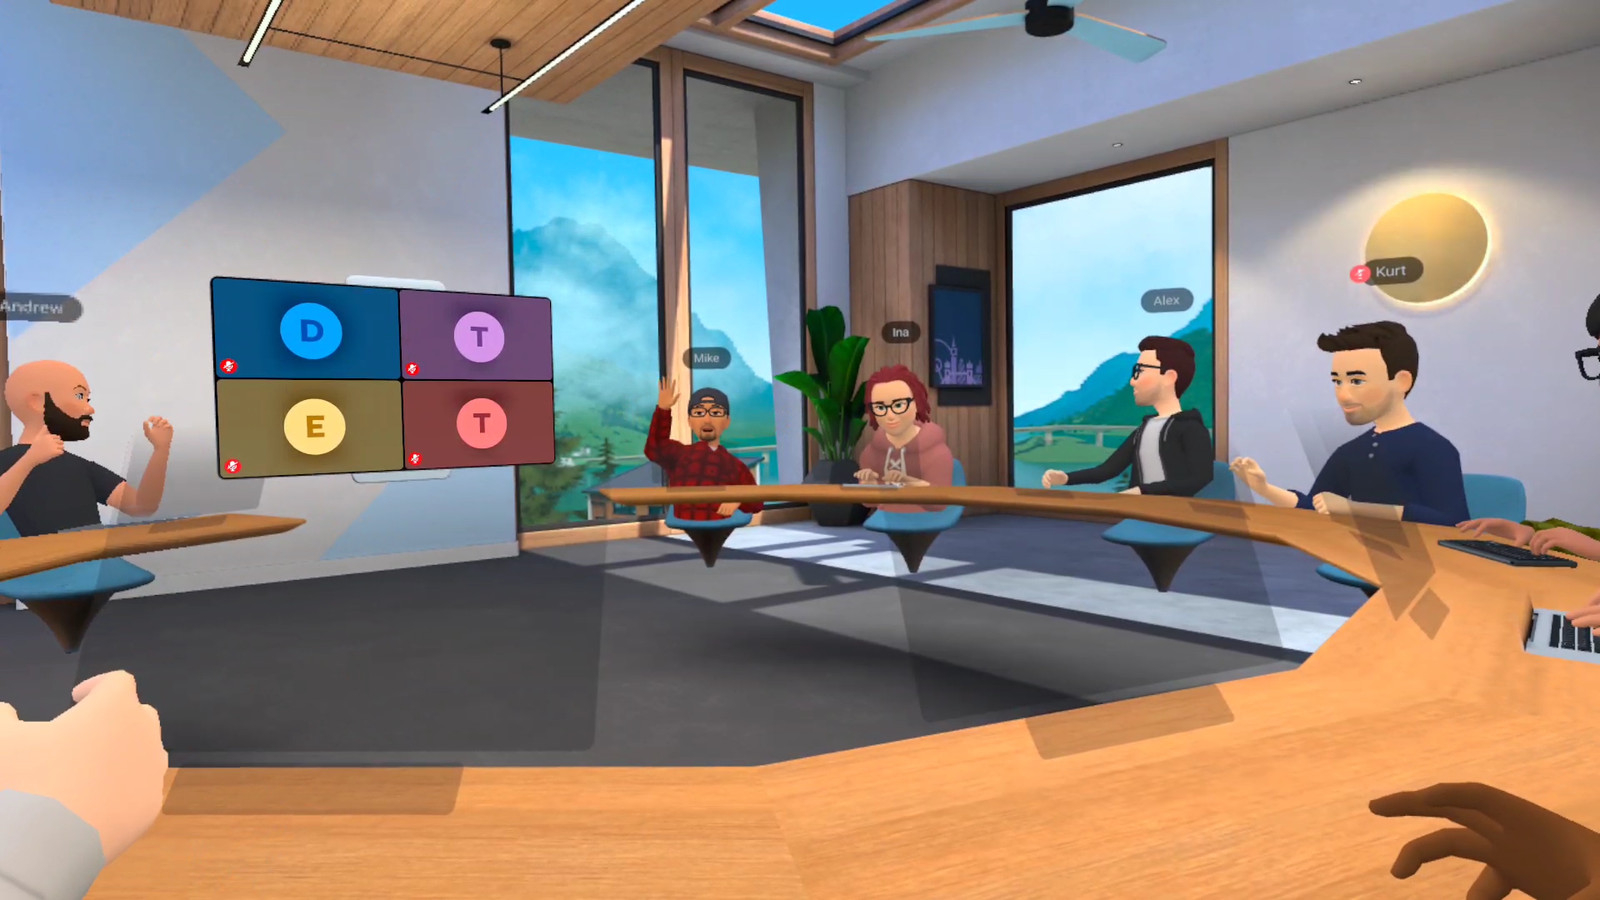 Horizon Workroom от Facebook позволяет бесплатно проводить встречи в виртуальной реальности. Приложение уже можно скачать 4